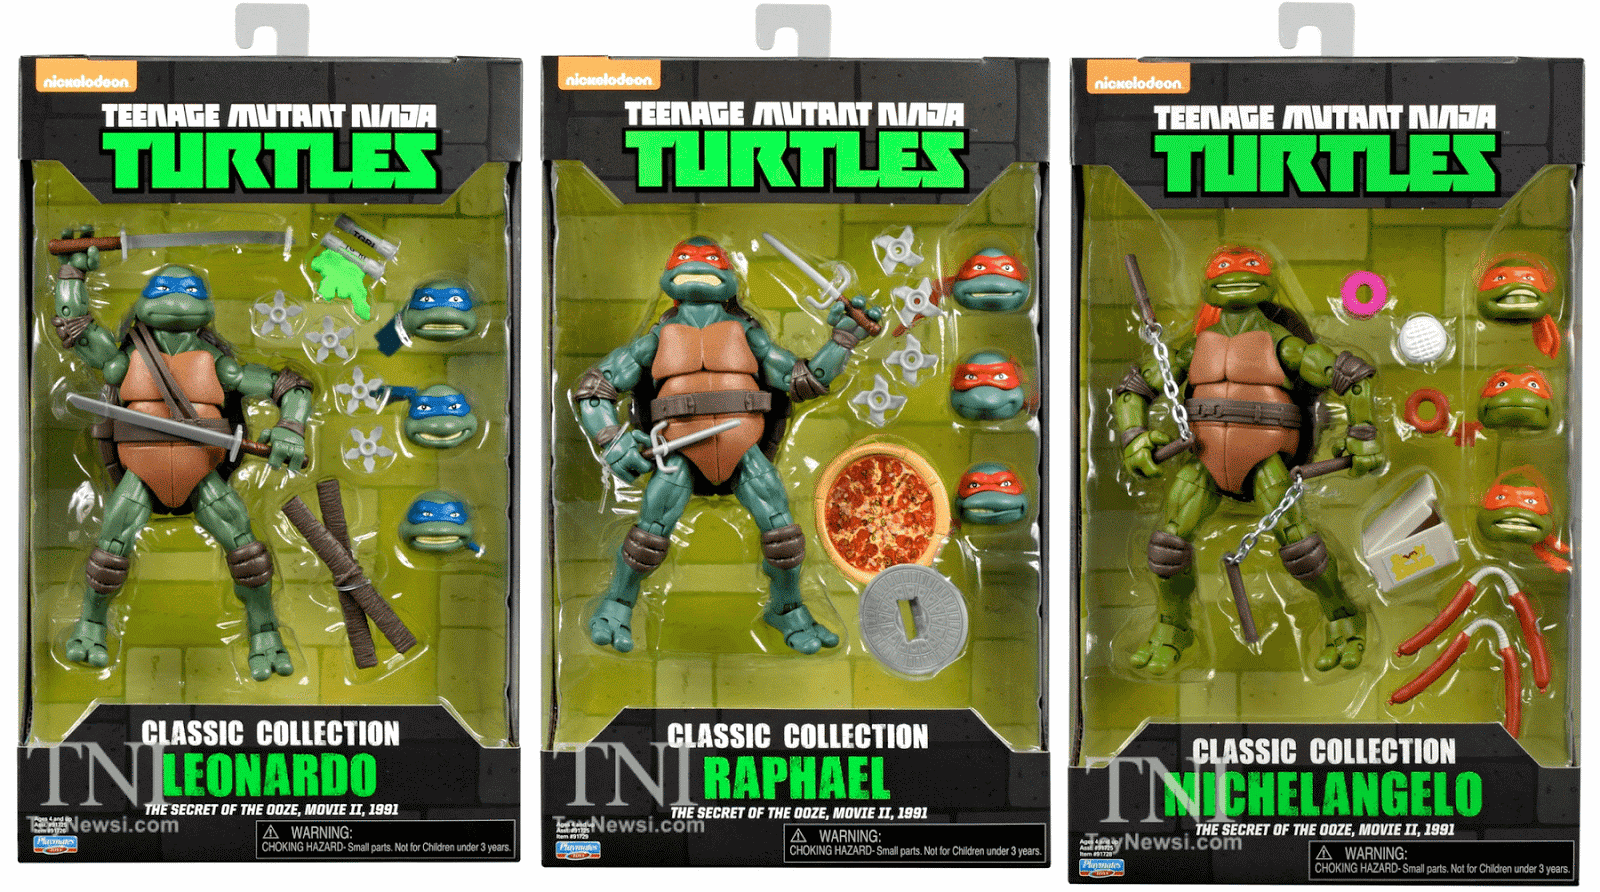 NickALive! Playmates Toys To Release "Teenage Mutant Ninja Turtles II